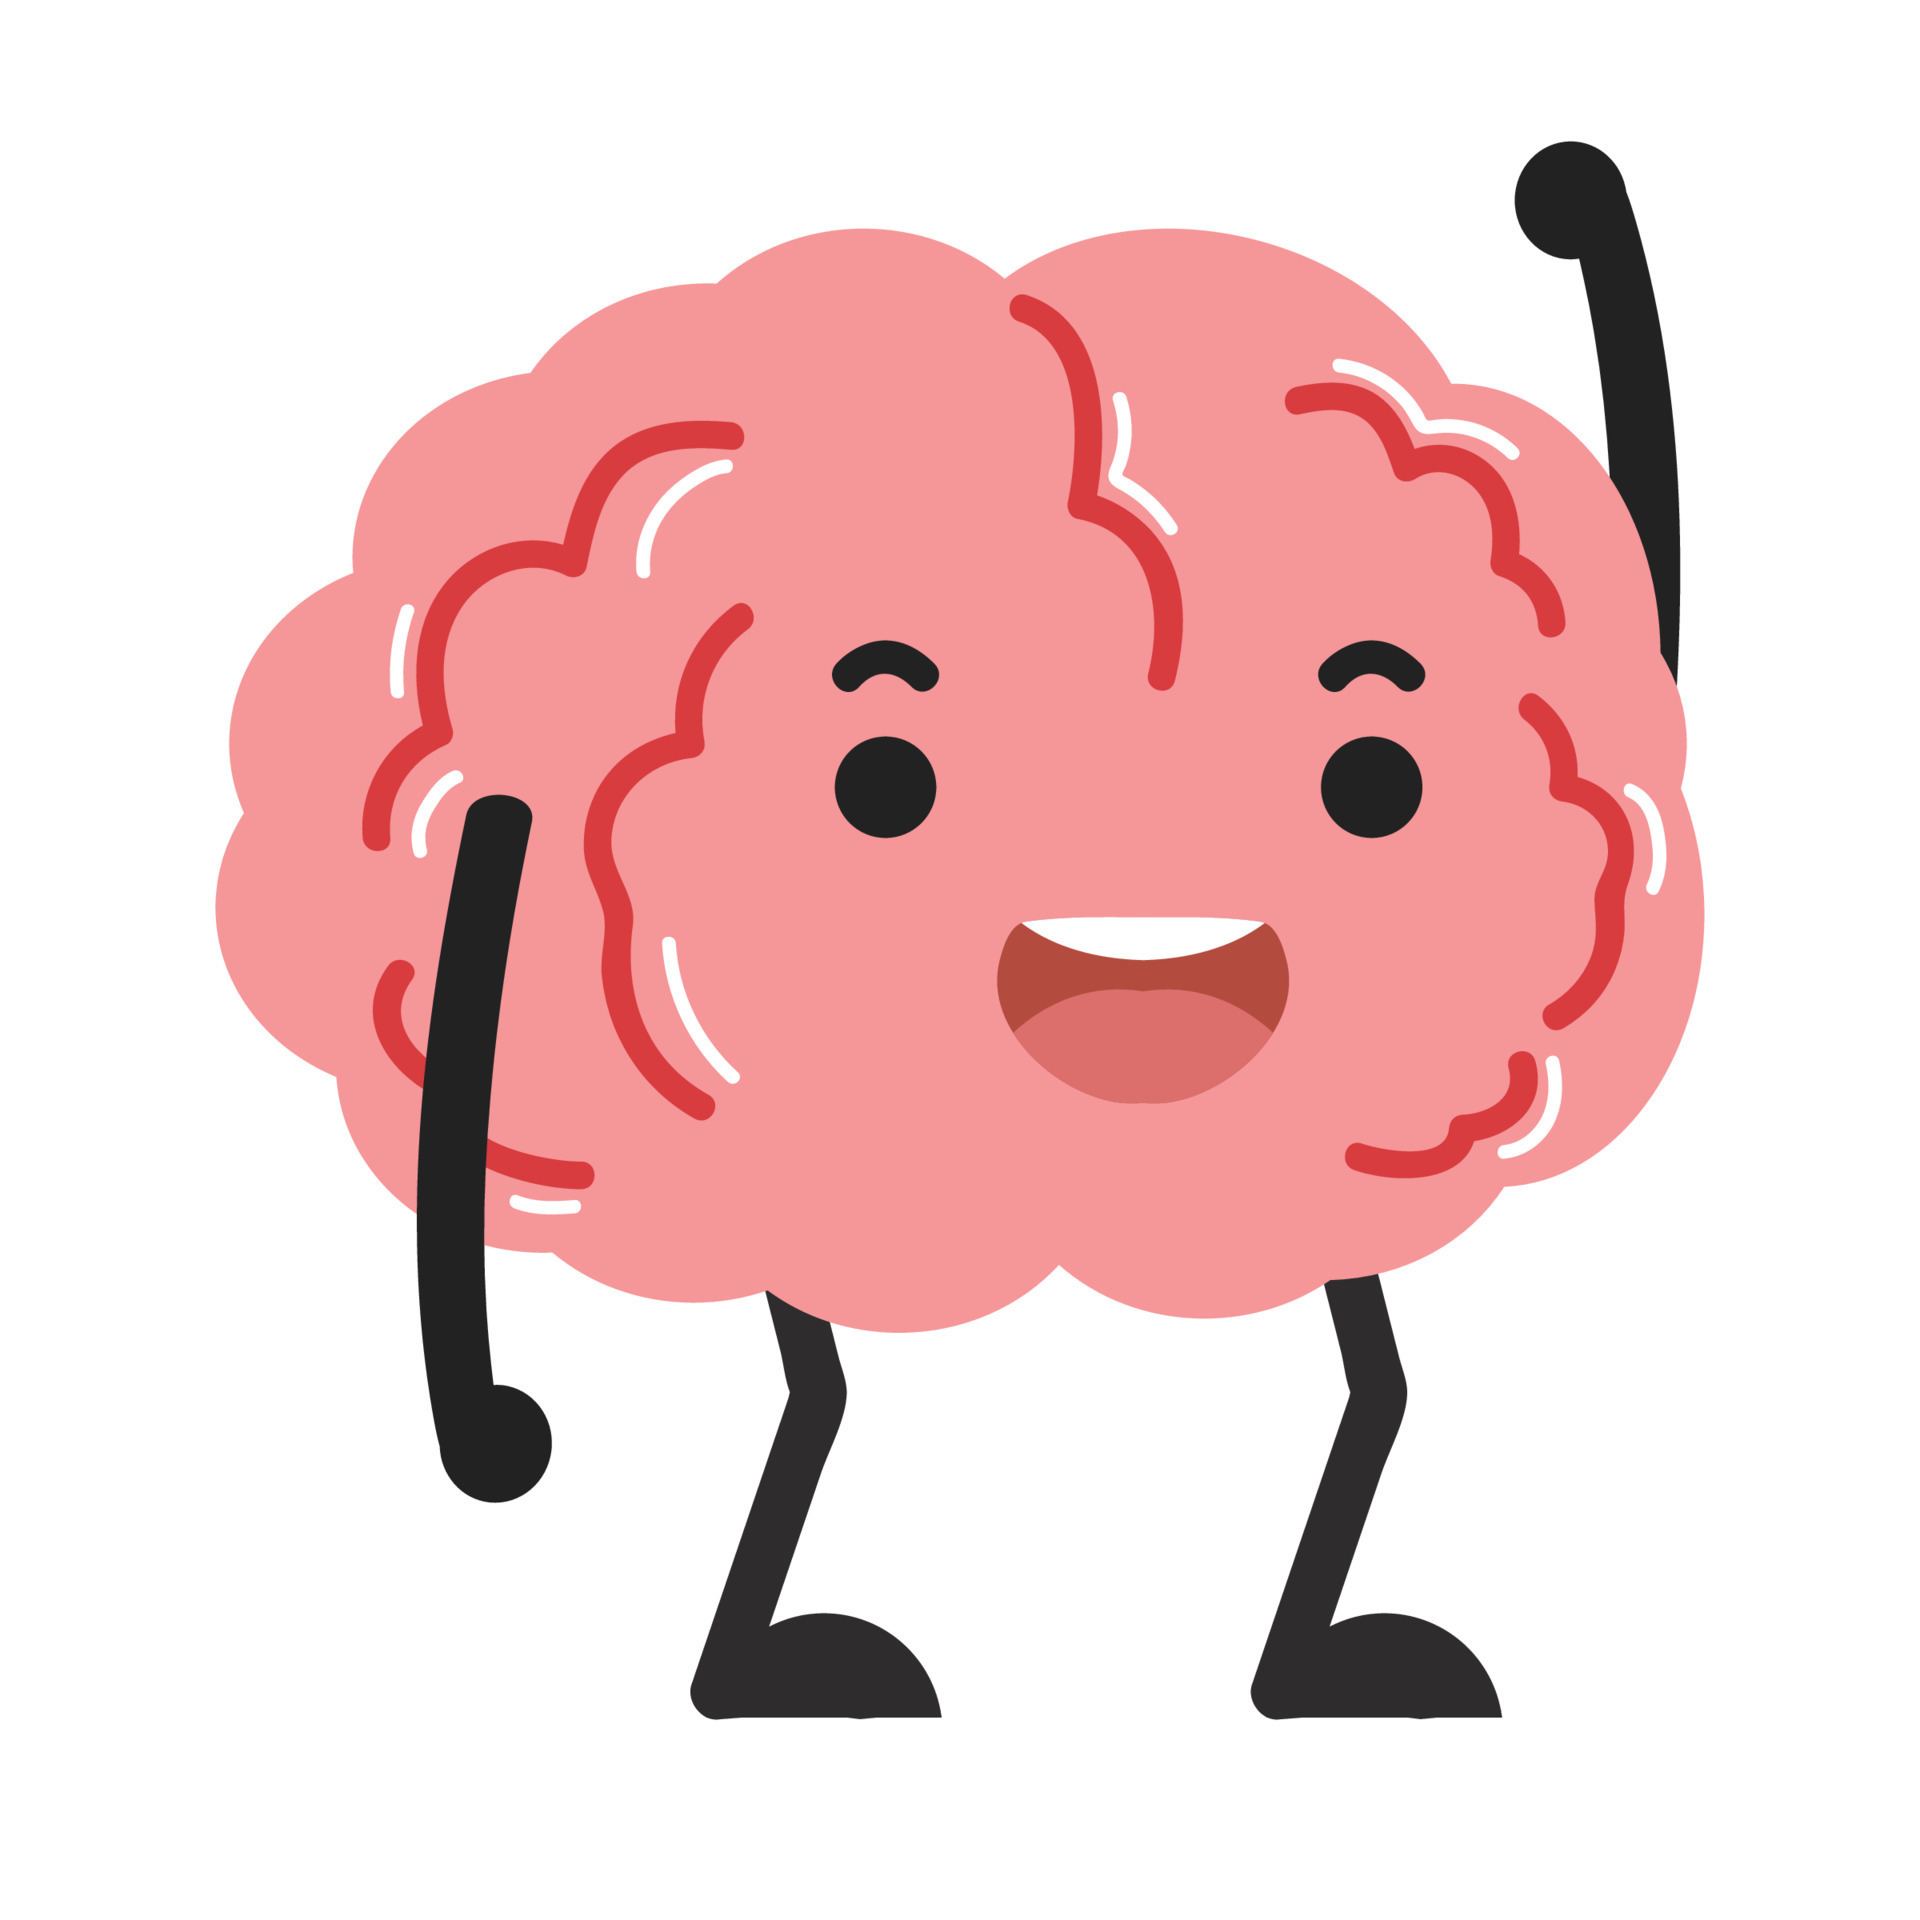 Happy brain cartoon character vector 10565520 Vector Art at Vecteezy